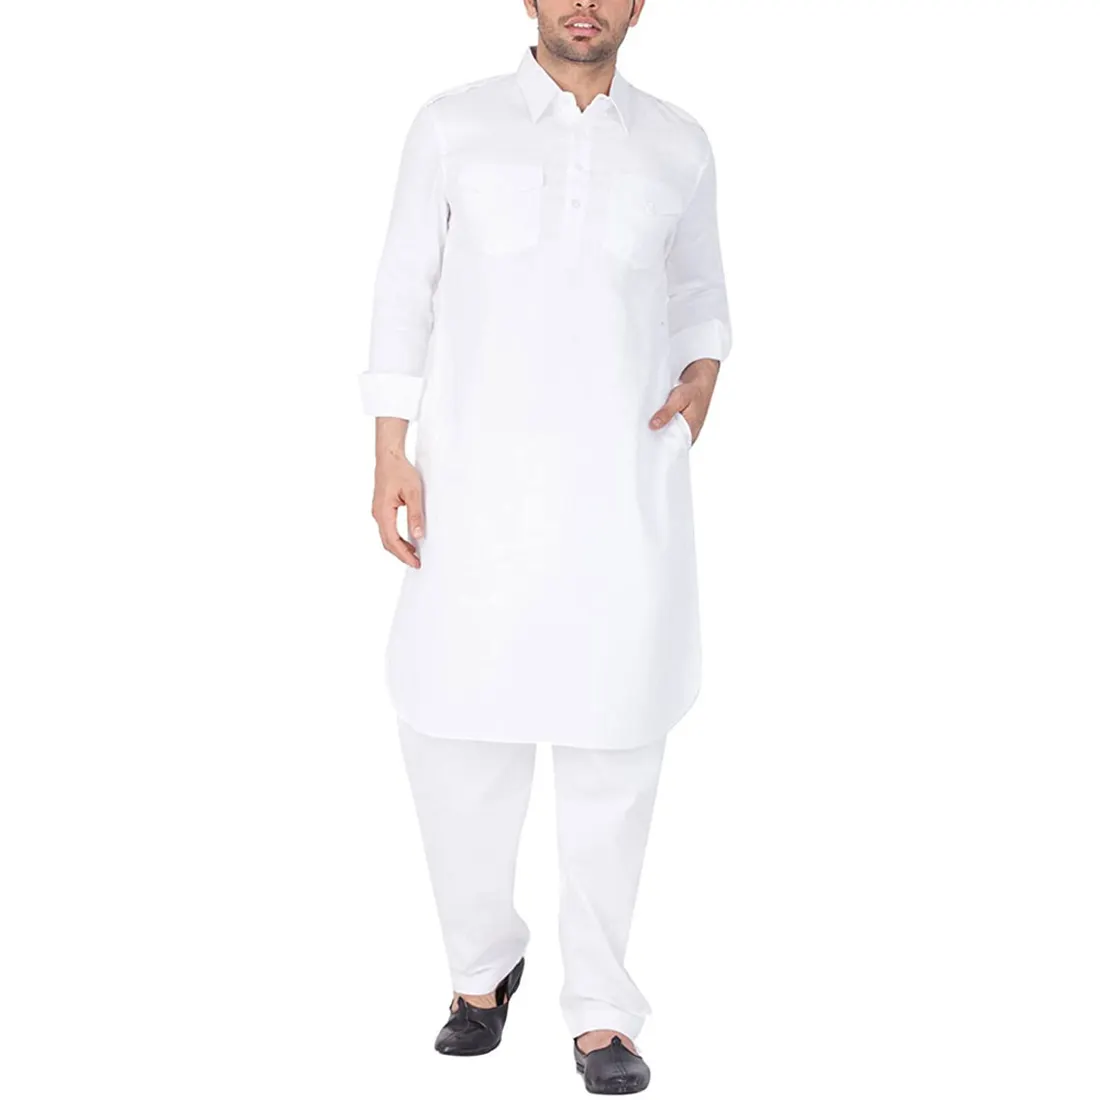 새로운 세련된 남성 드레스 Shalwar Kameez 캐주얼웨어 남성 Shalwar Kameez 세트의 최신 디자인